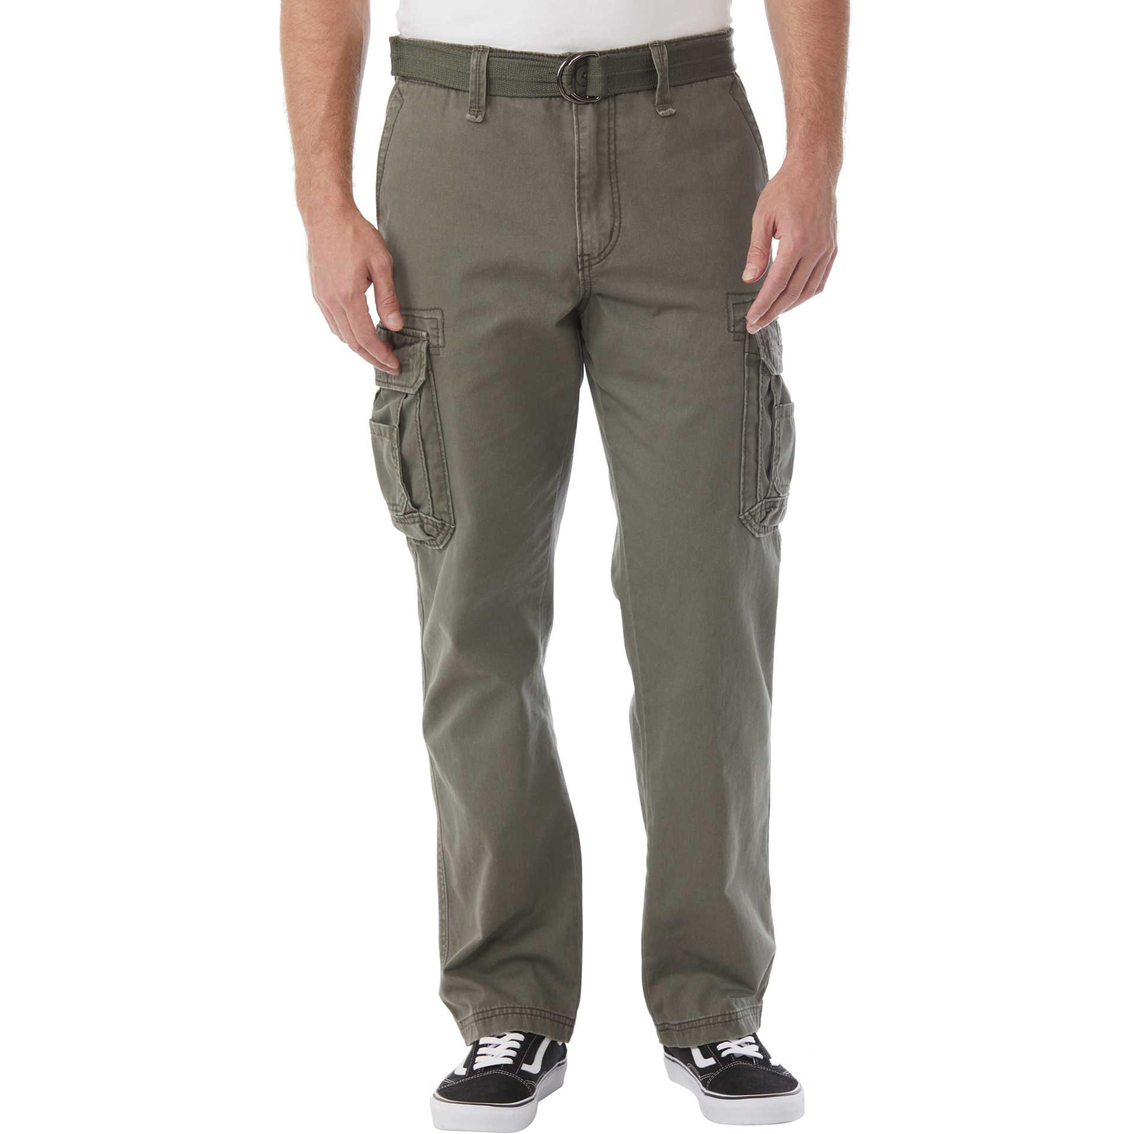 Unionbay Survivor Pants With Belt | Pants | Clothing & Accessories ...